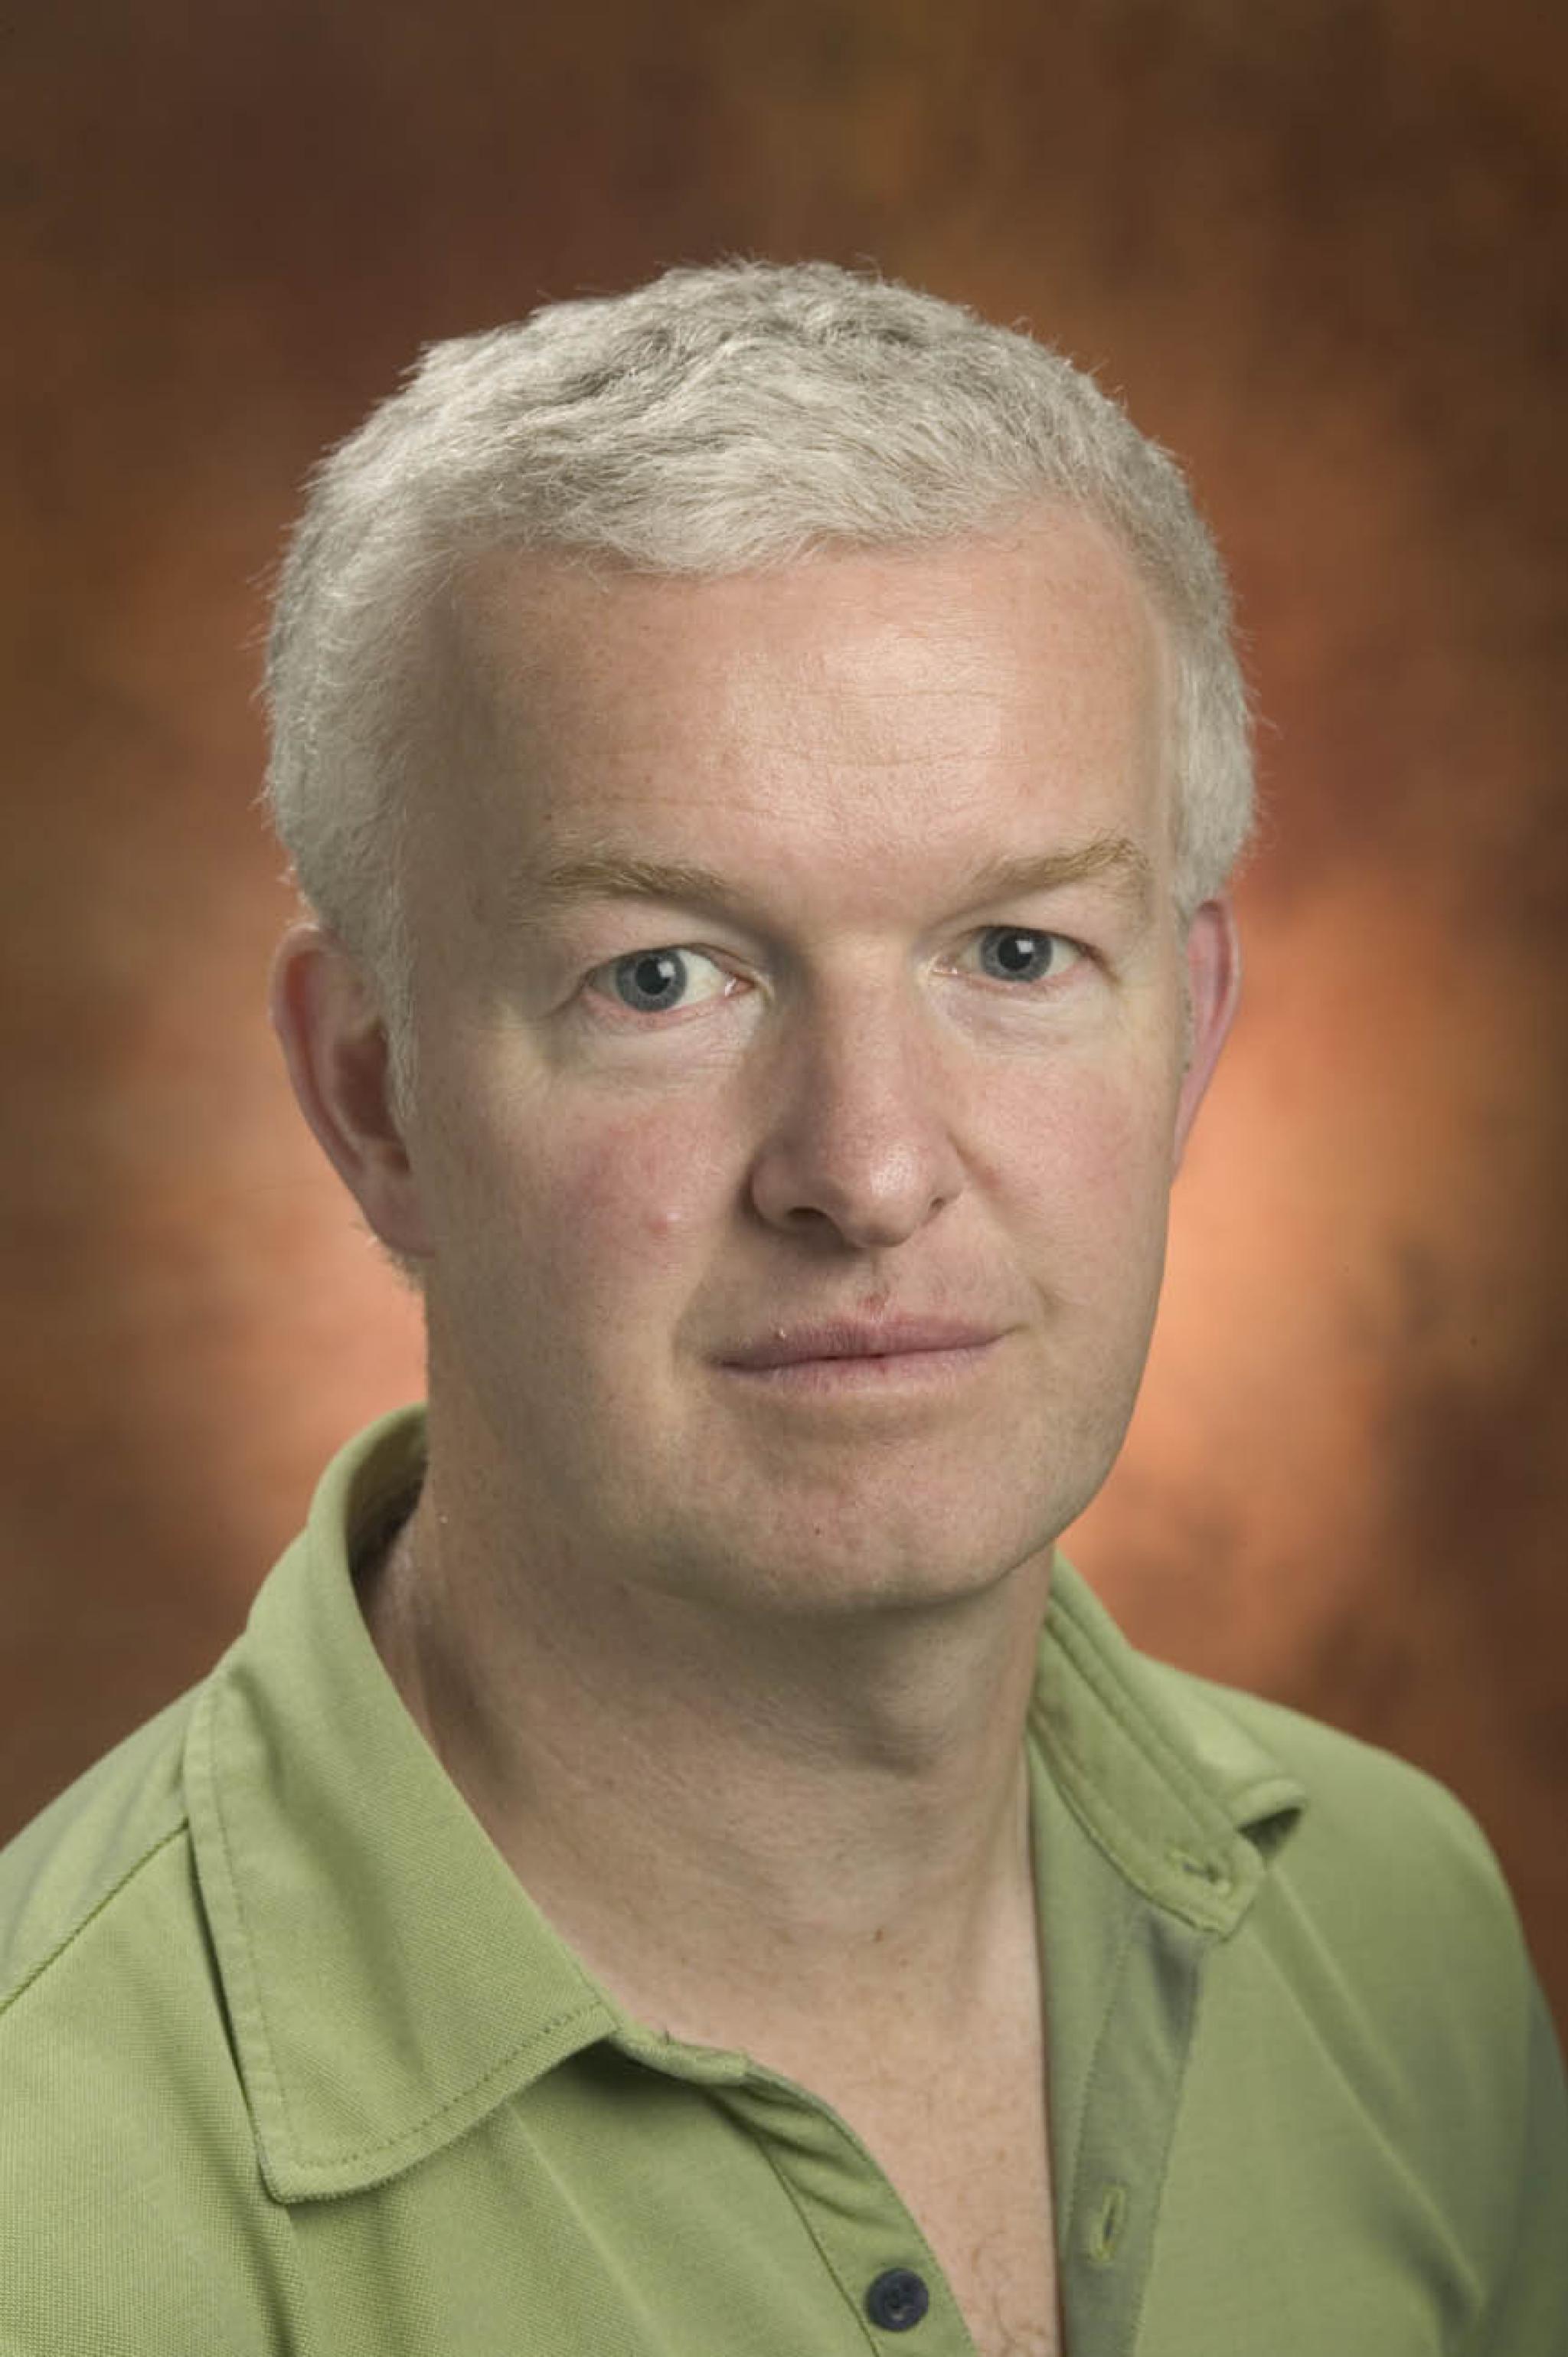 Headshot of Chris Ballard in a green collared shirt looking at camera